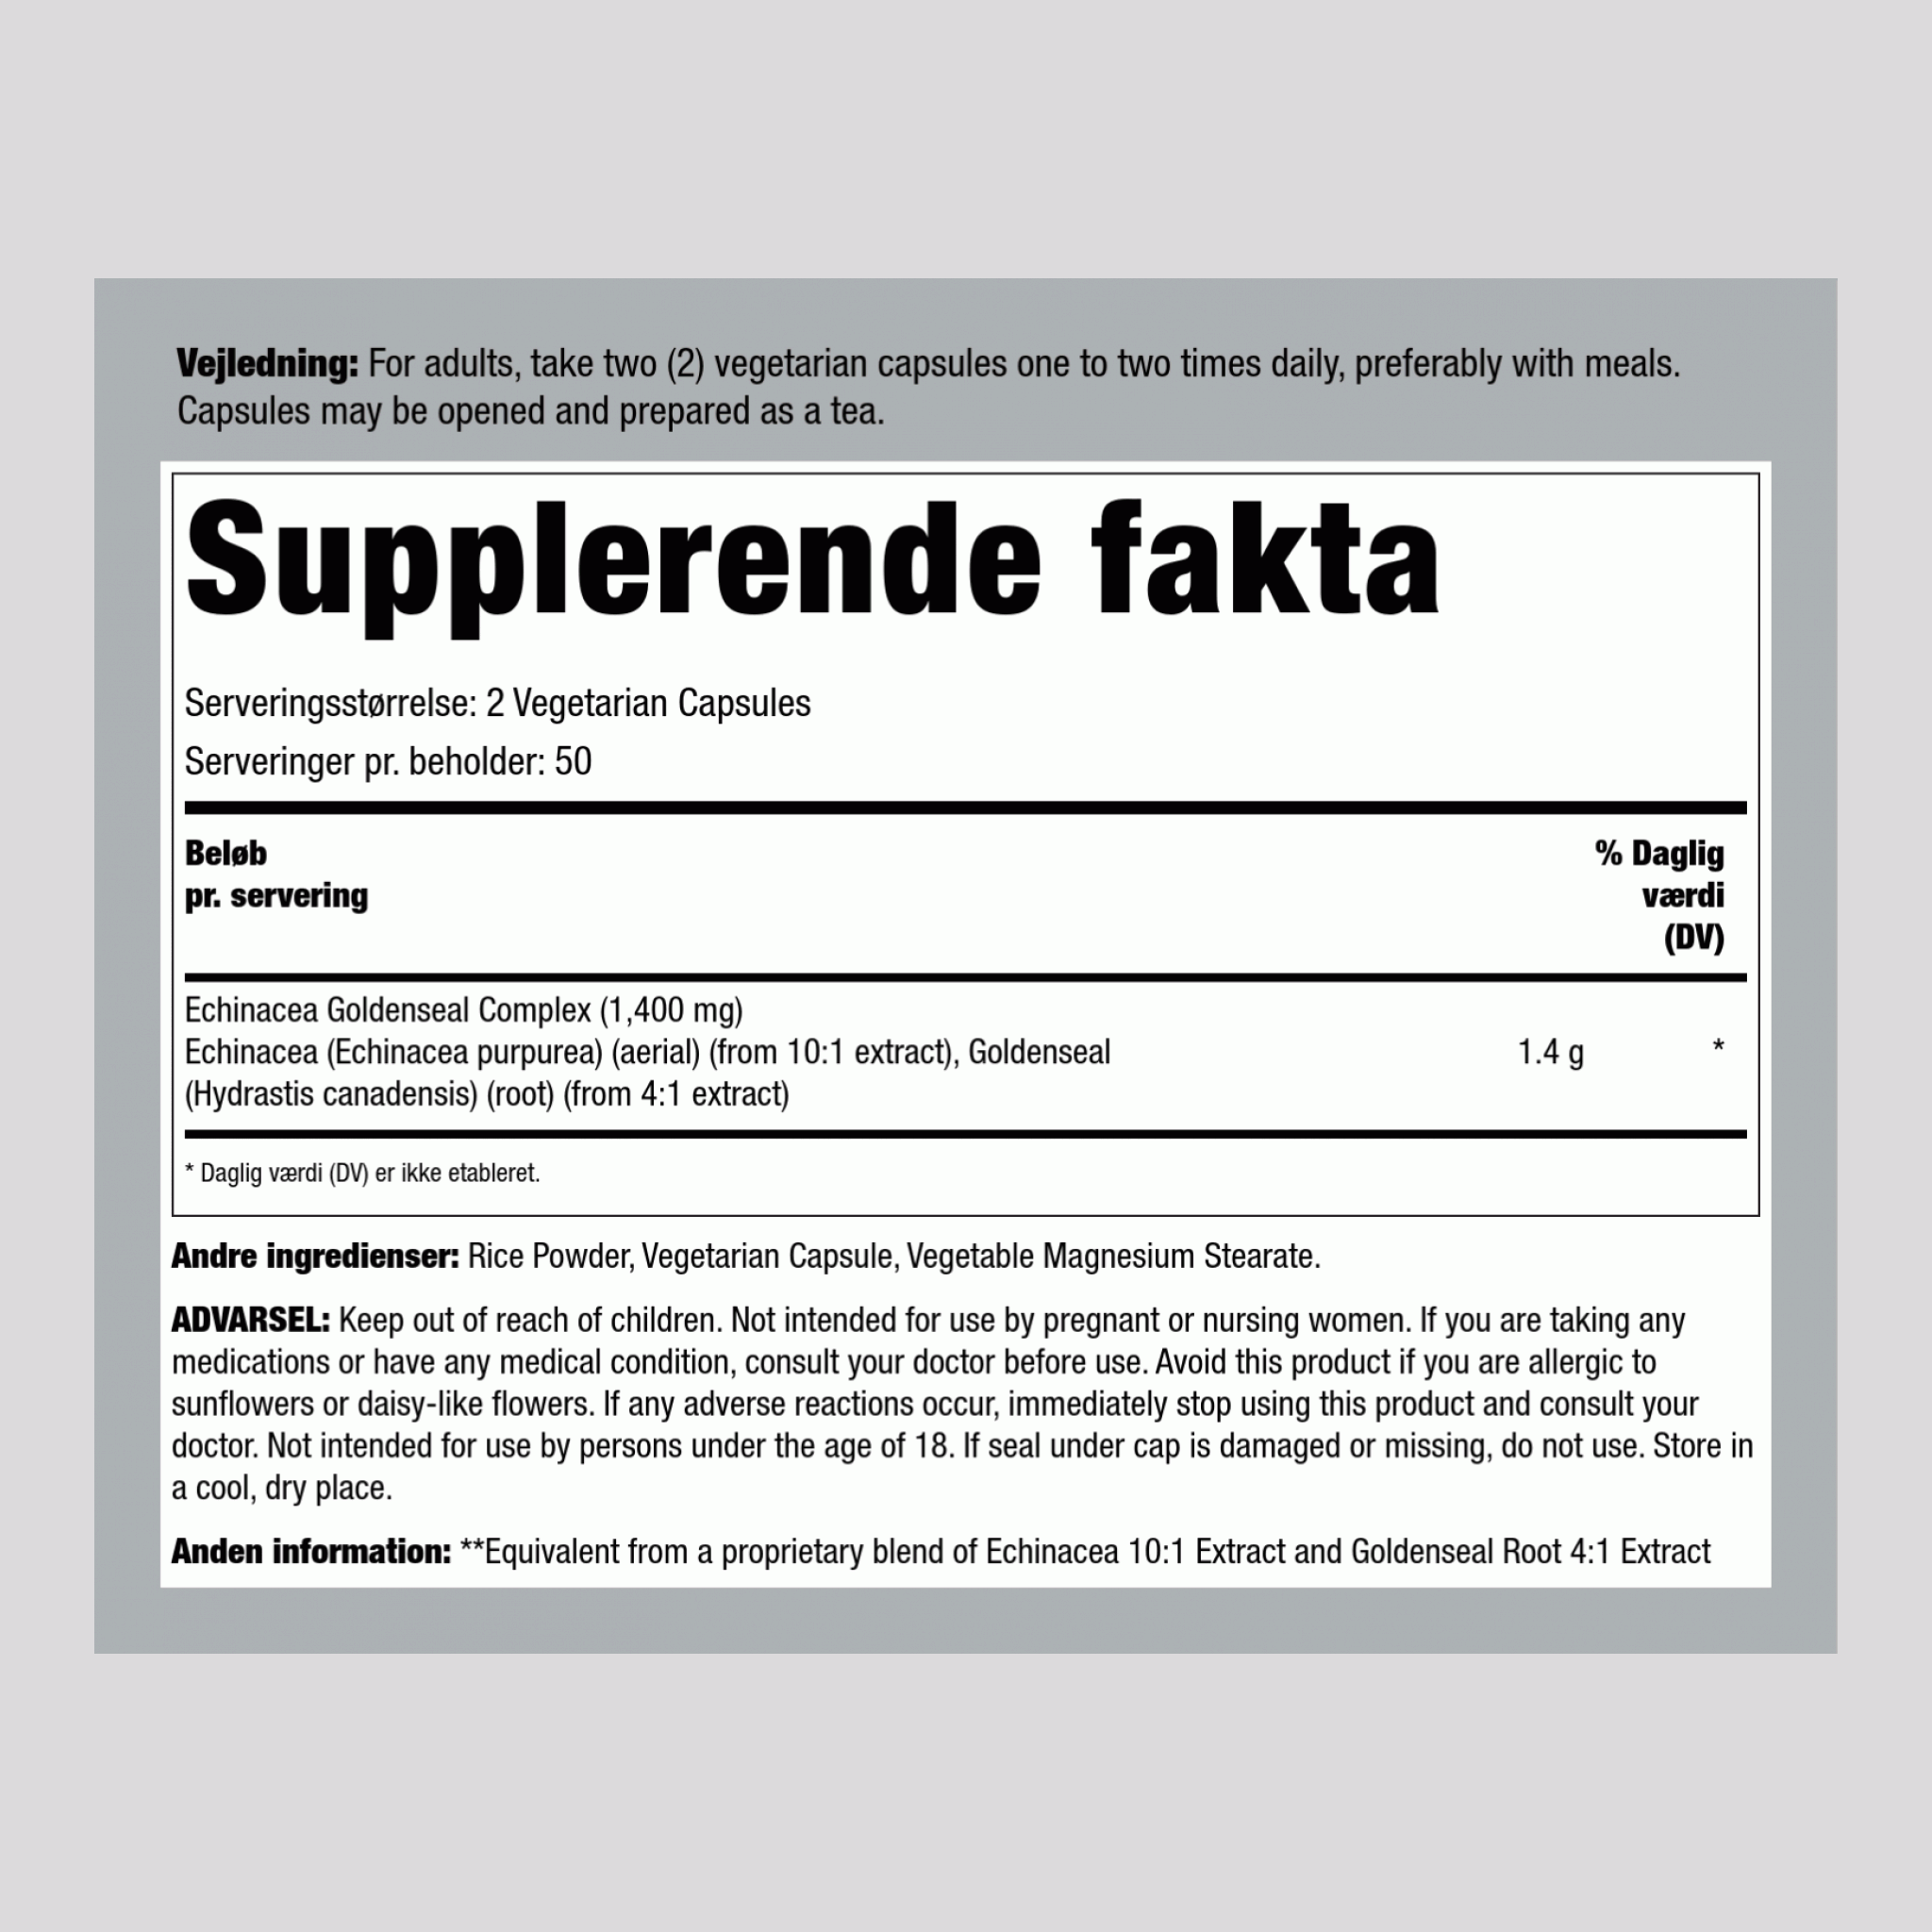 Echinacea Goldenseal, 1400 mg (per serving), 100 Vegetarian Capsules, 2  Bottles